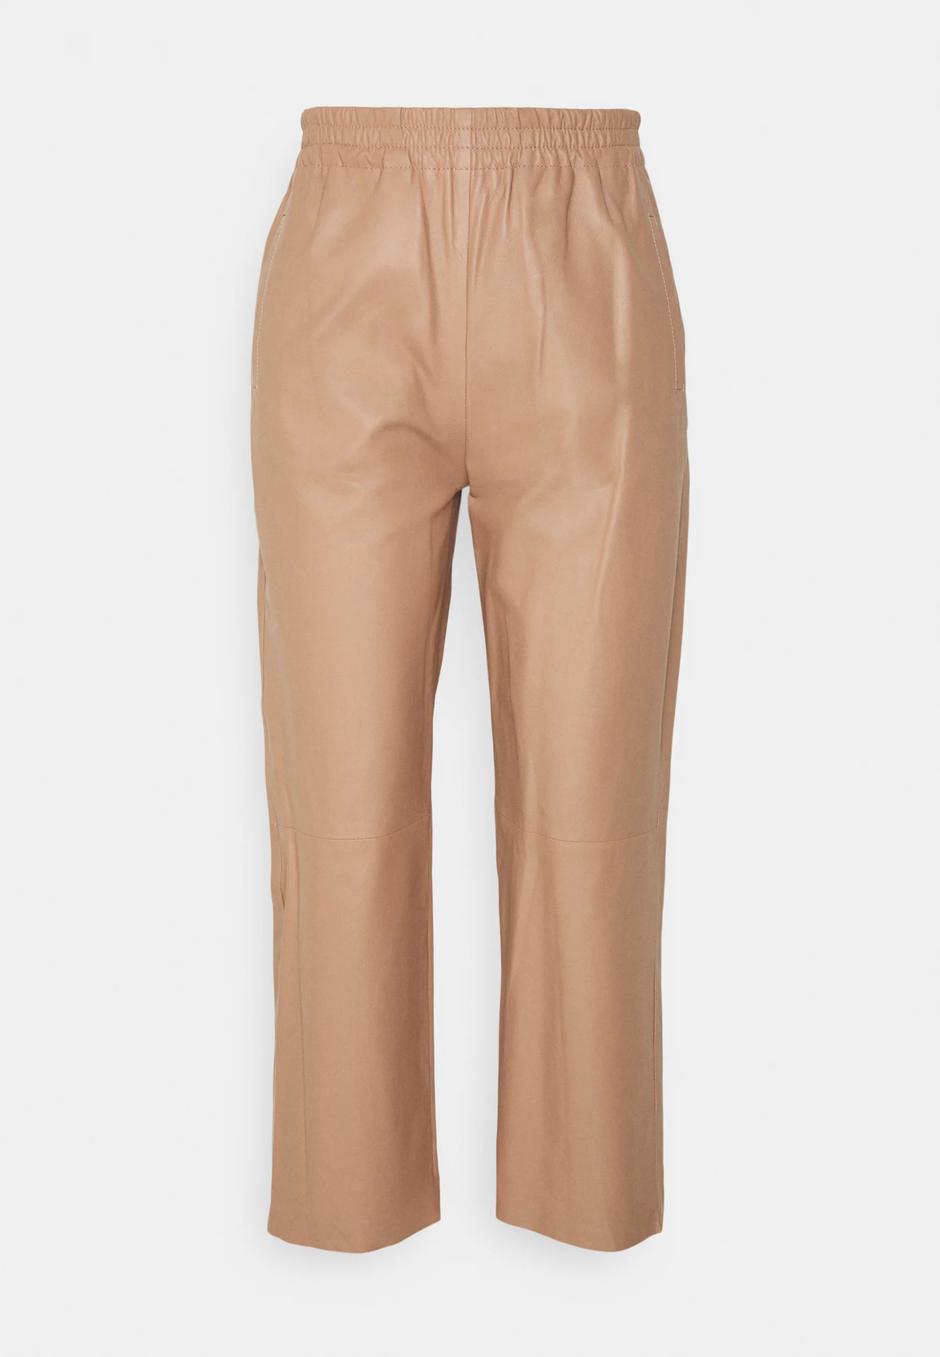 Foto: Pinko, kožne hlače u nude boji (279,95 eura) | Autor: Pinko